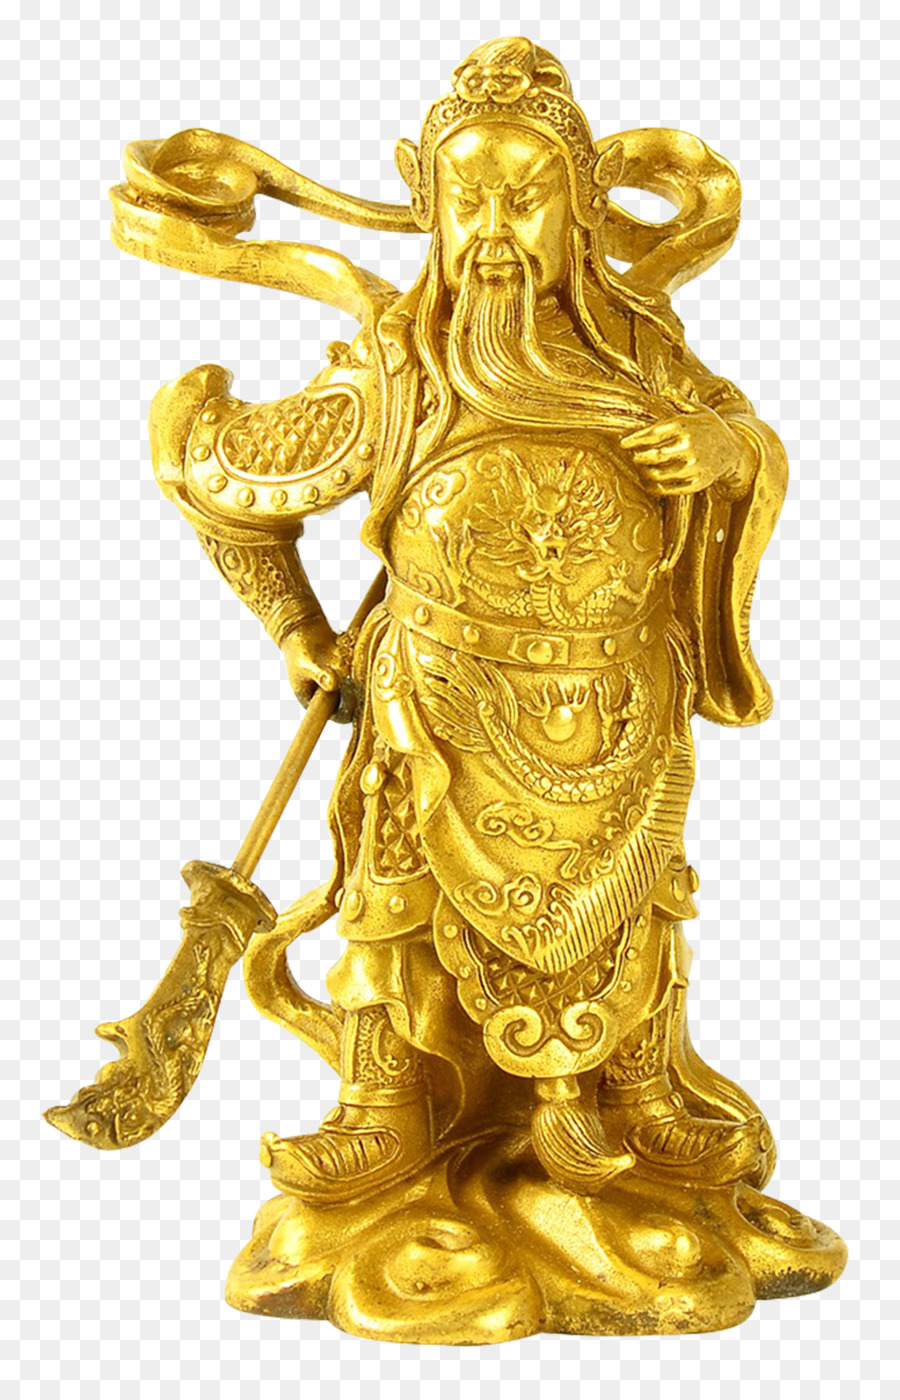 Caishen Rame u7384u575bu771fu541b Bronzo - dio della ricchezza statua di bronzo